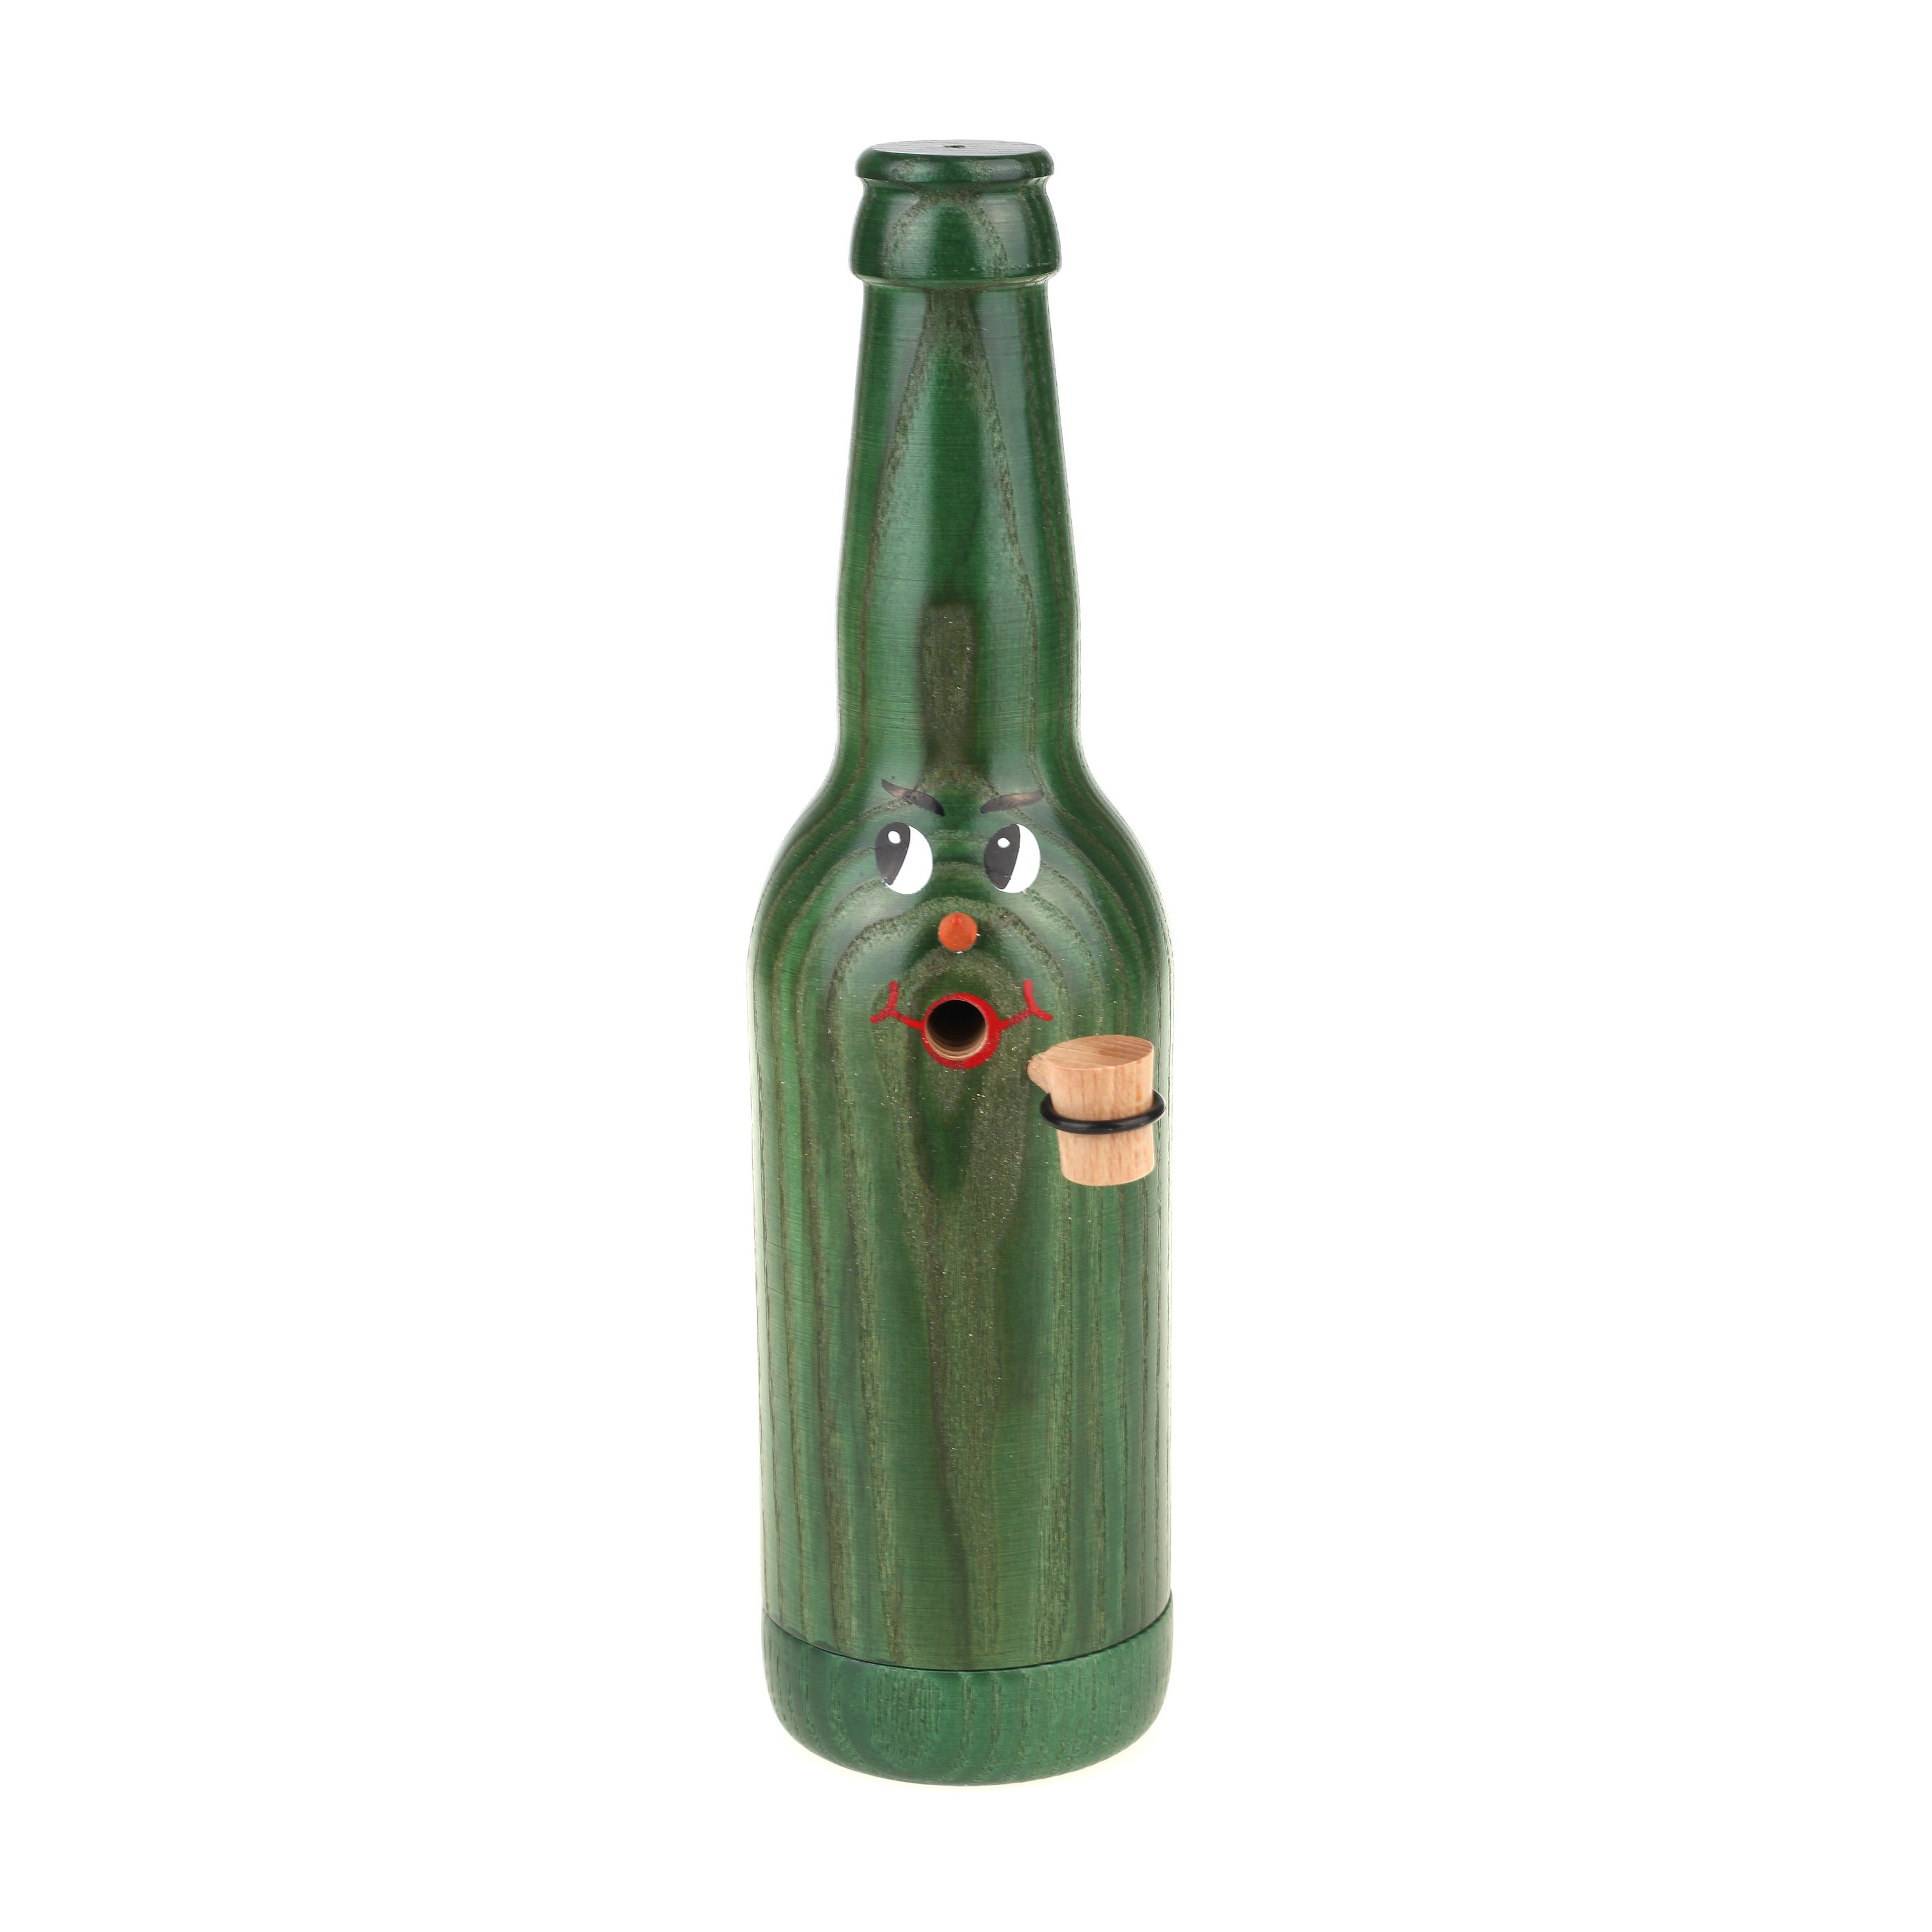 Räucherflasche Räucherfigur Rauchfigur Räuchermännchen Bier Longneck 0,33 - grün